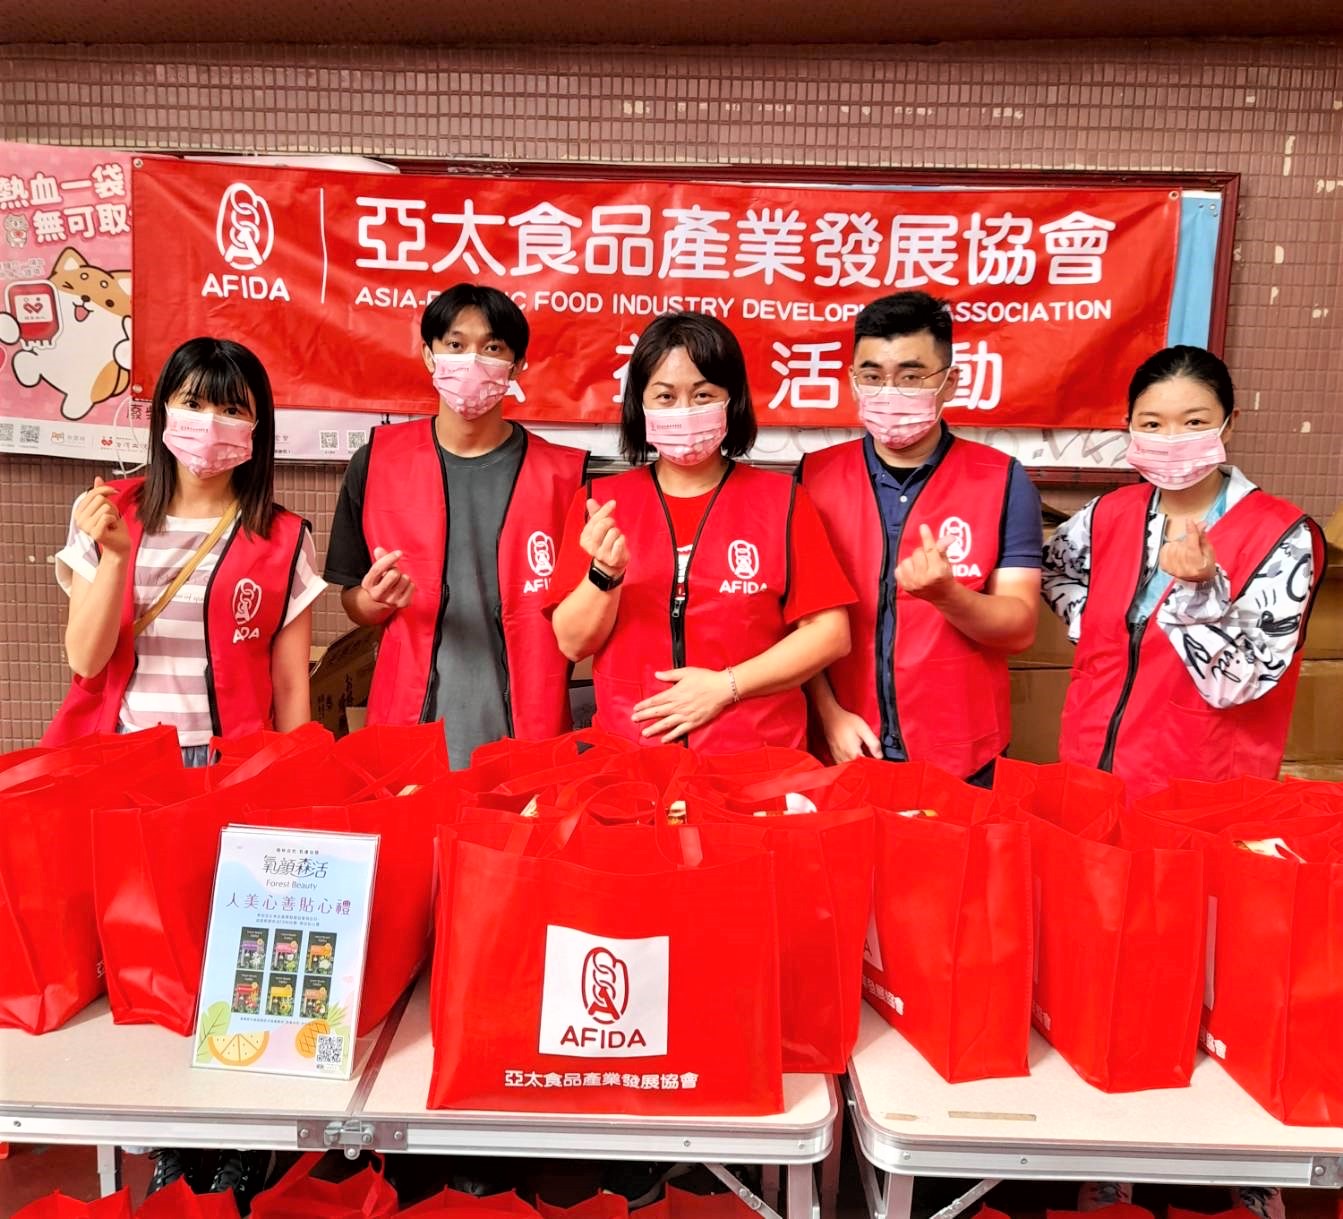 「亞太食品產業發展協會」與「台北捐血中心」再度於昨天(9/1)在台北西門町峨嵋停車場捐血車合作「捐血迎中秋 幫助更多家庭團圓」活動